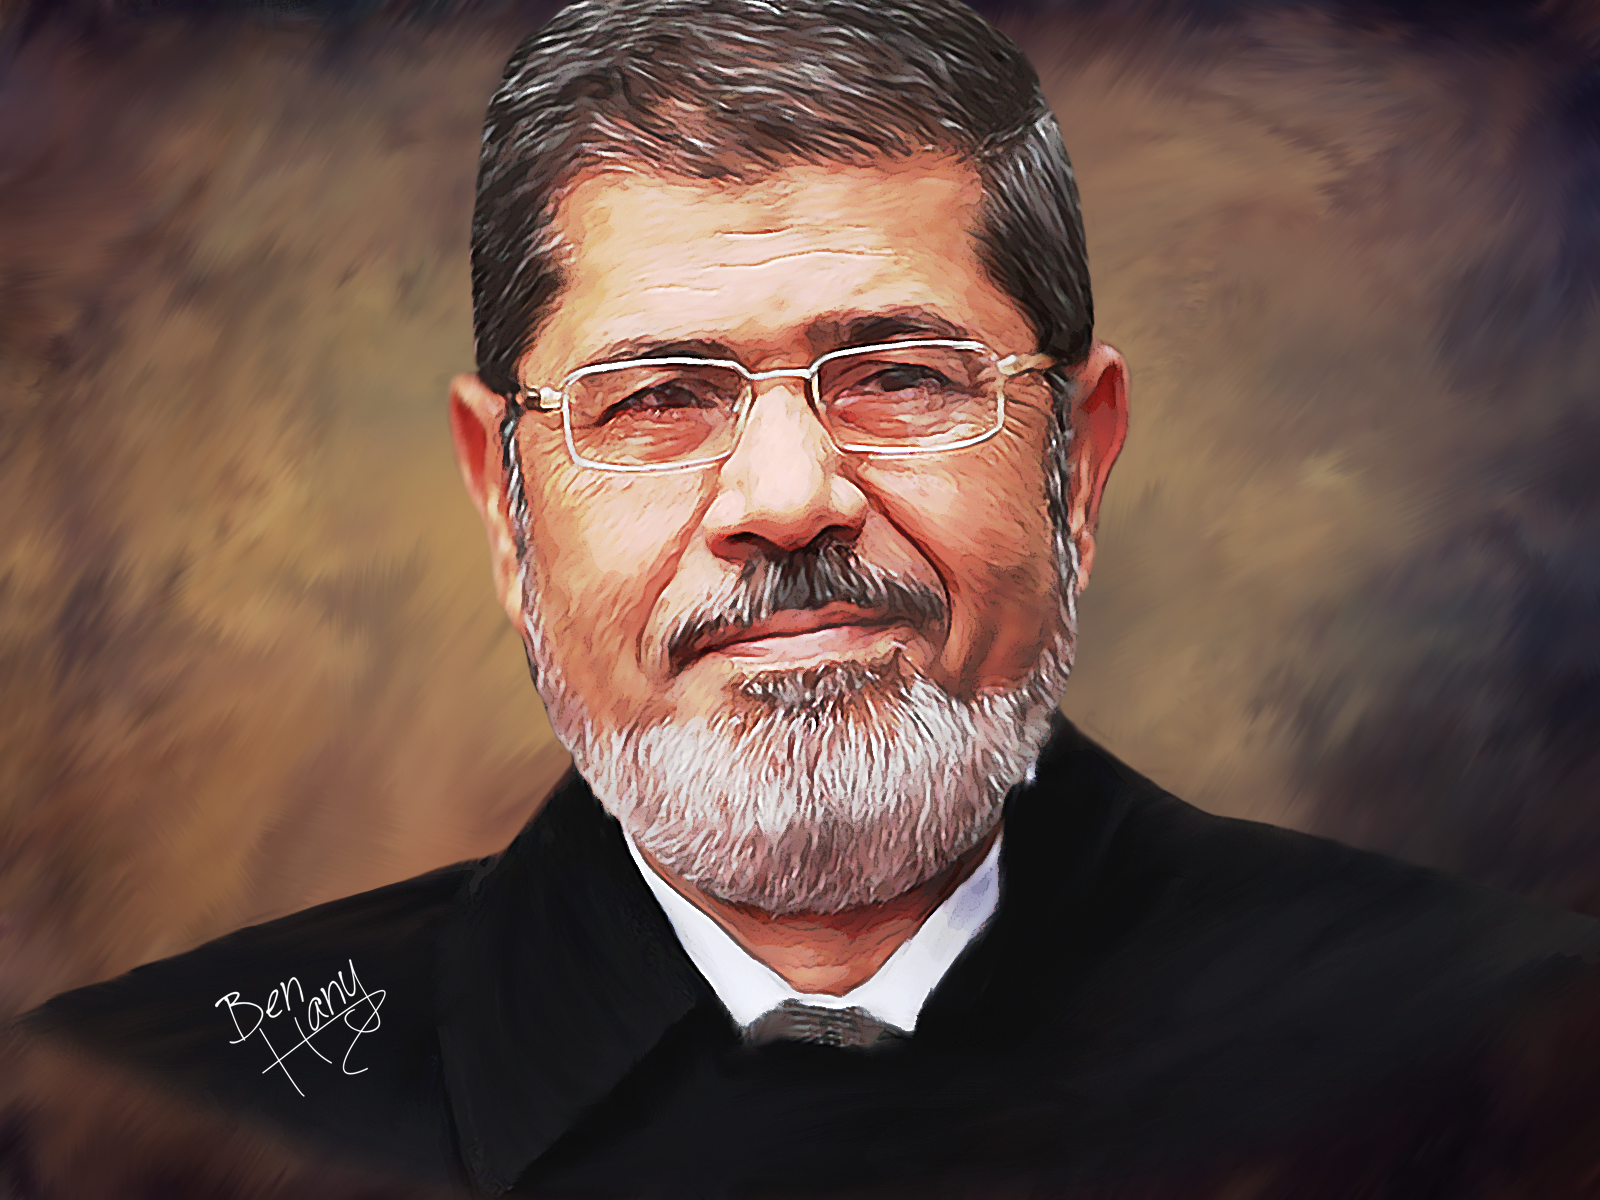 ... president <b>Mohamed Morsi</b> by m7madlshall - president_mohamed_morsi_by_m7madlshall-d7z5vms